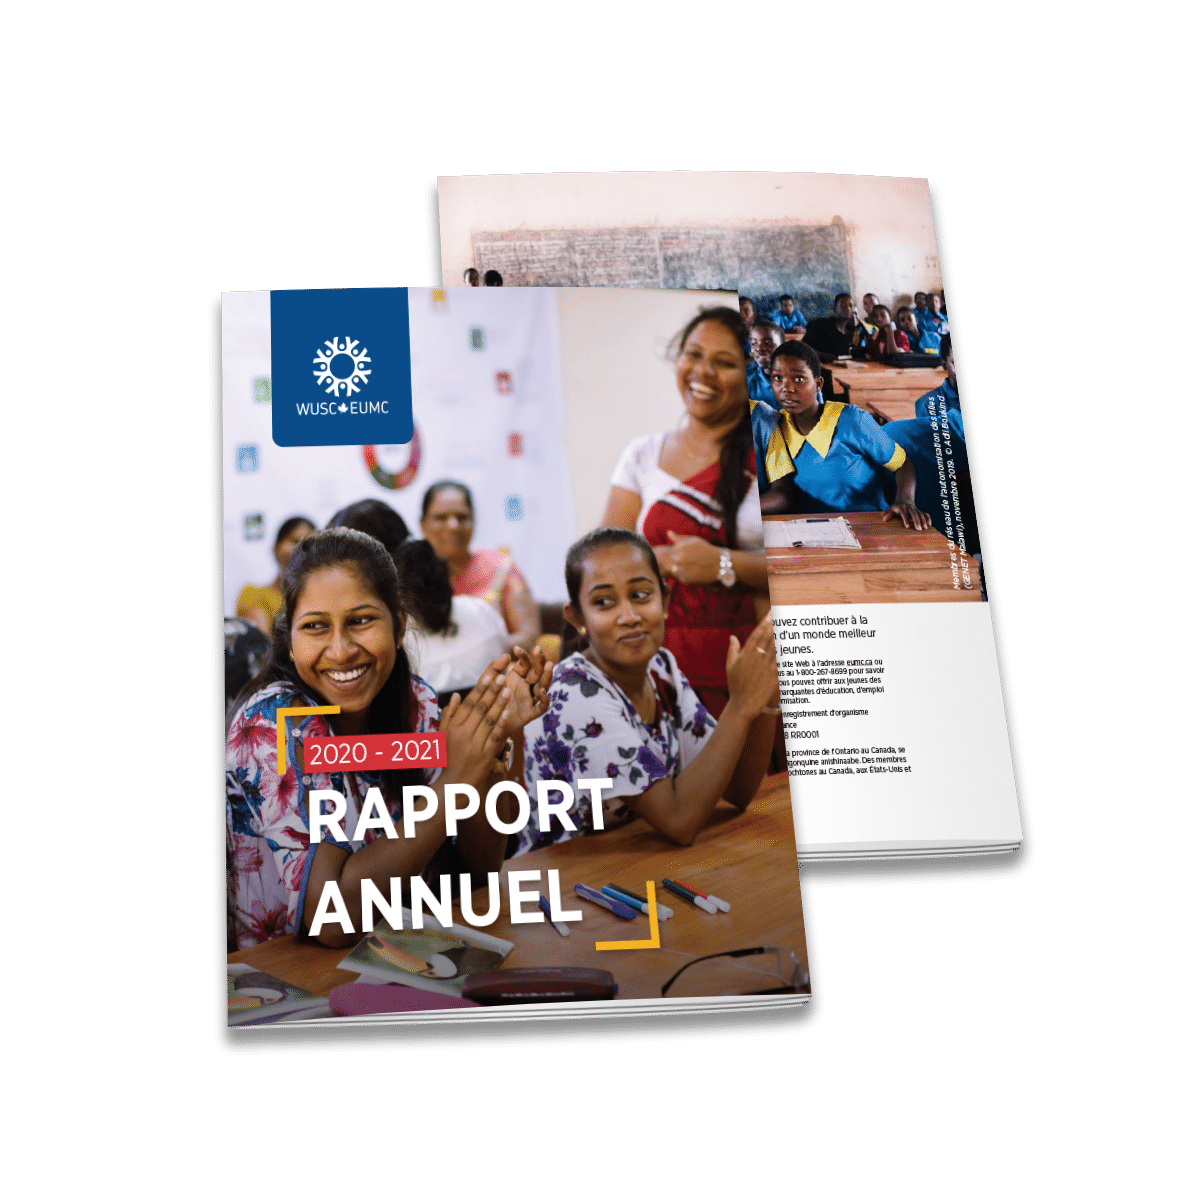 EUMC 2020-2021 rapport annuel